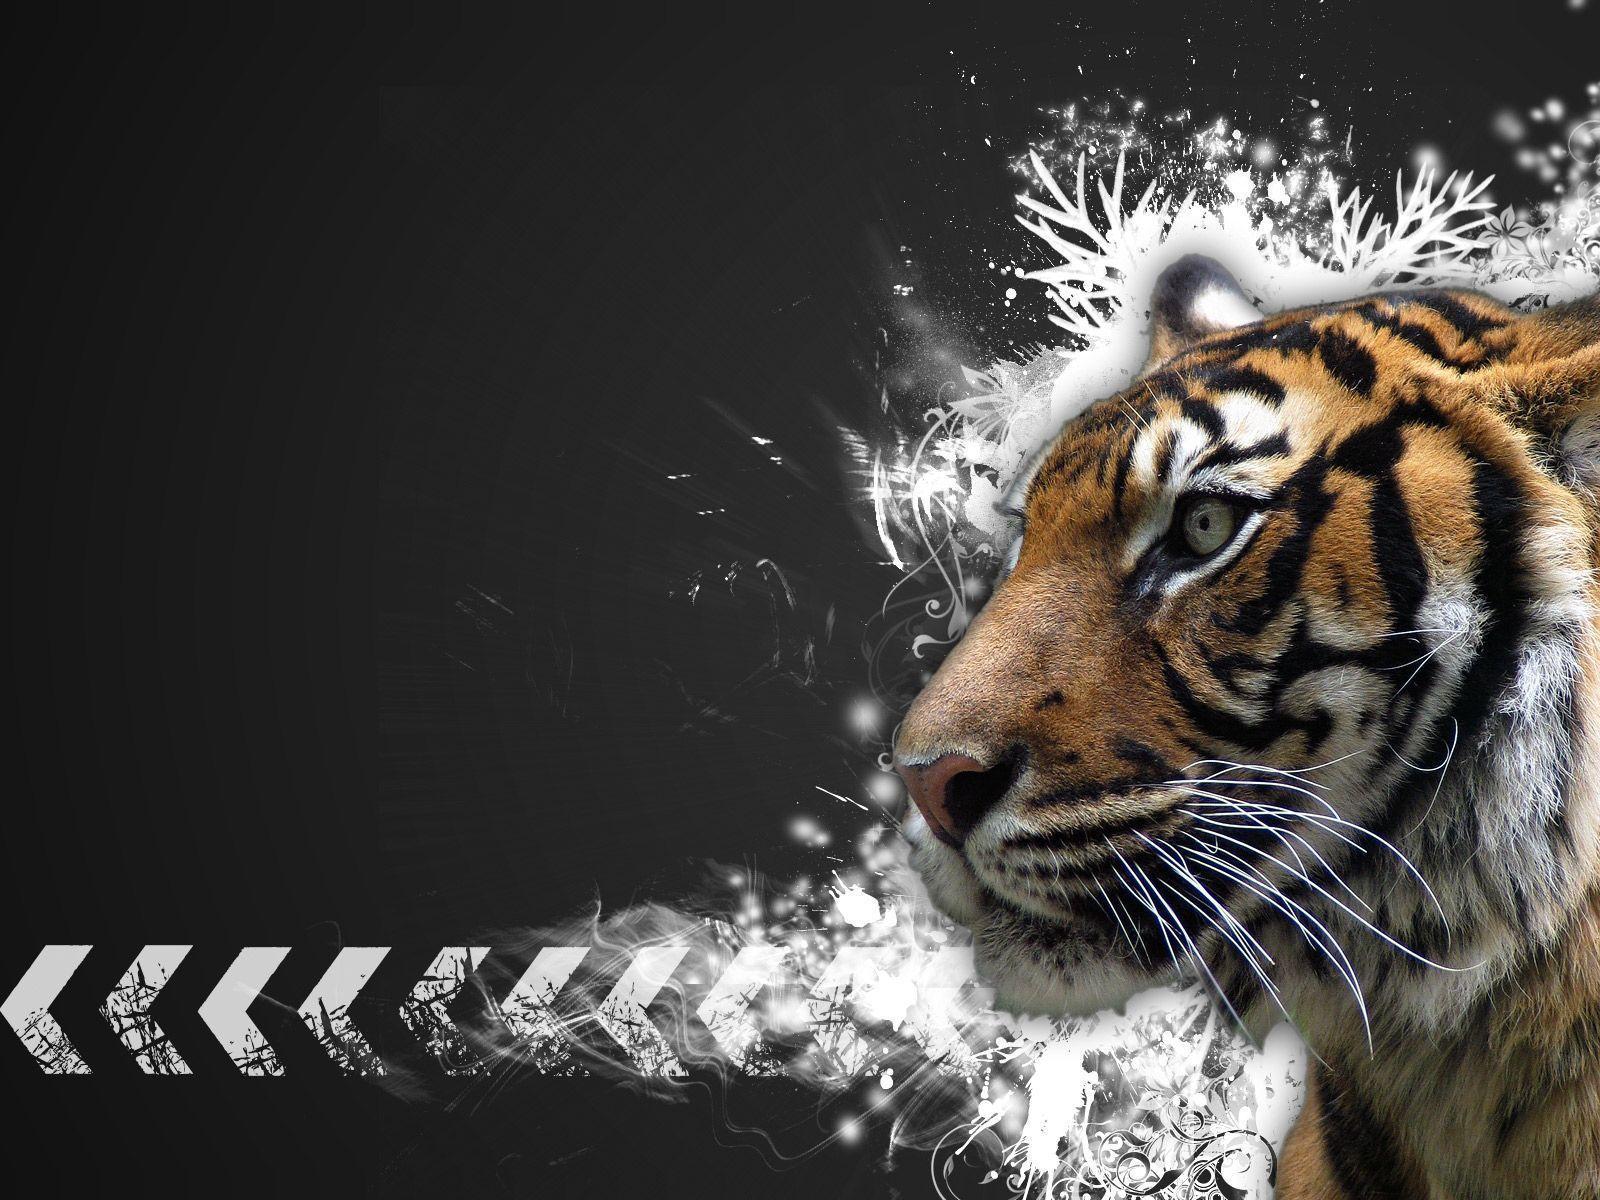 Animals For > Tiger Image For Desktop